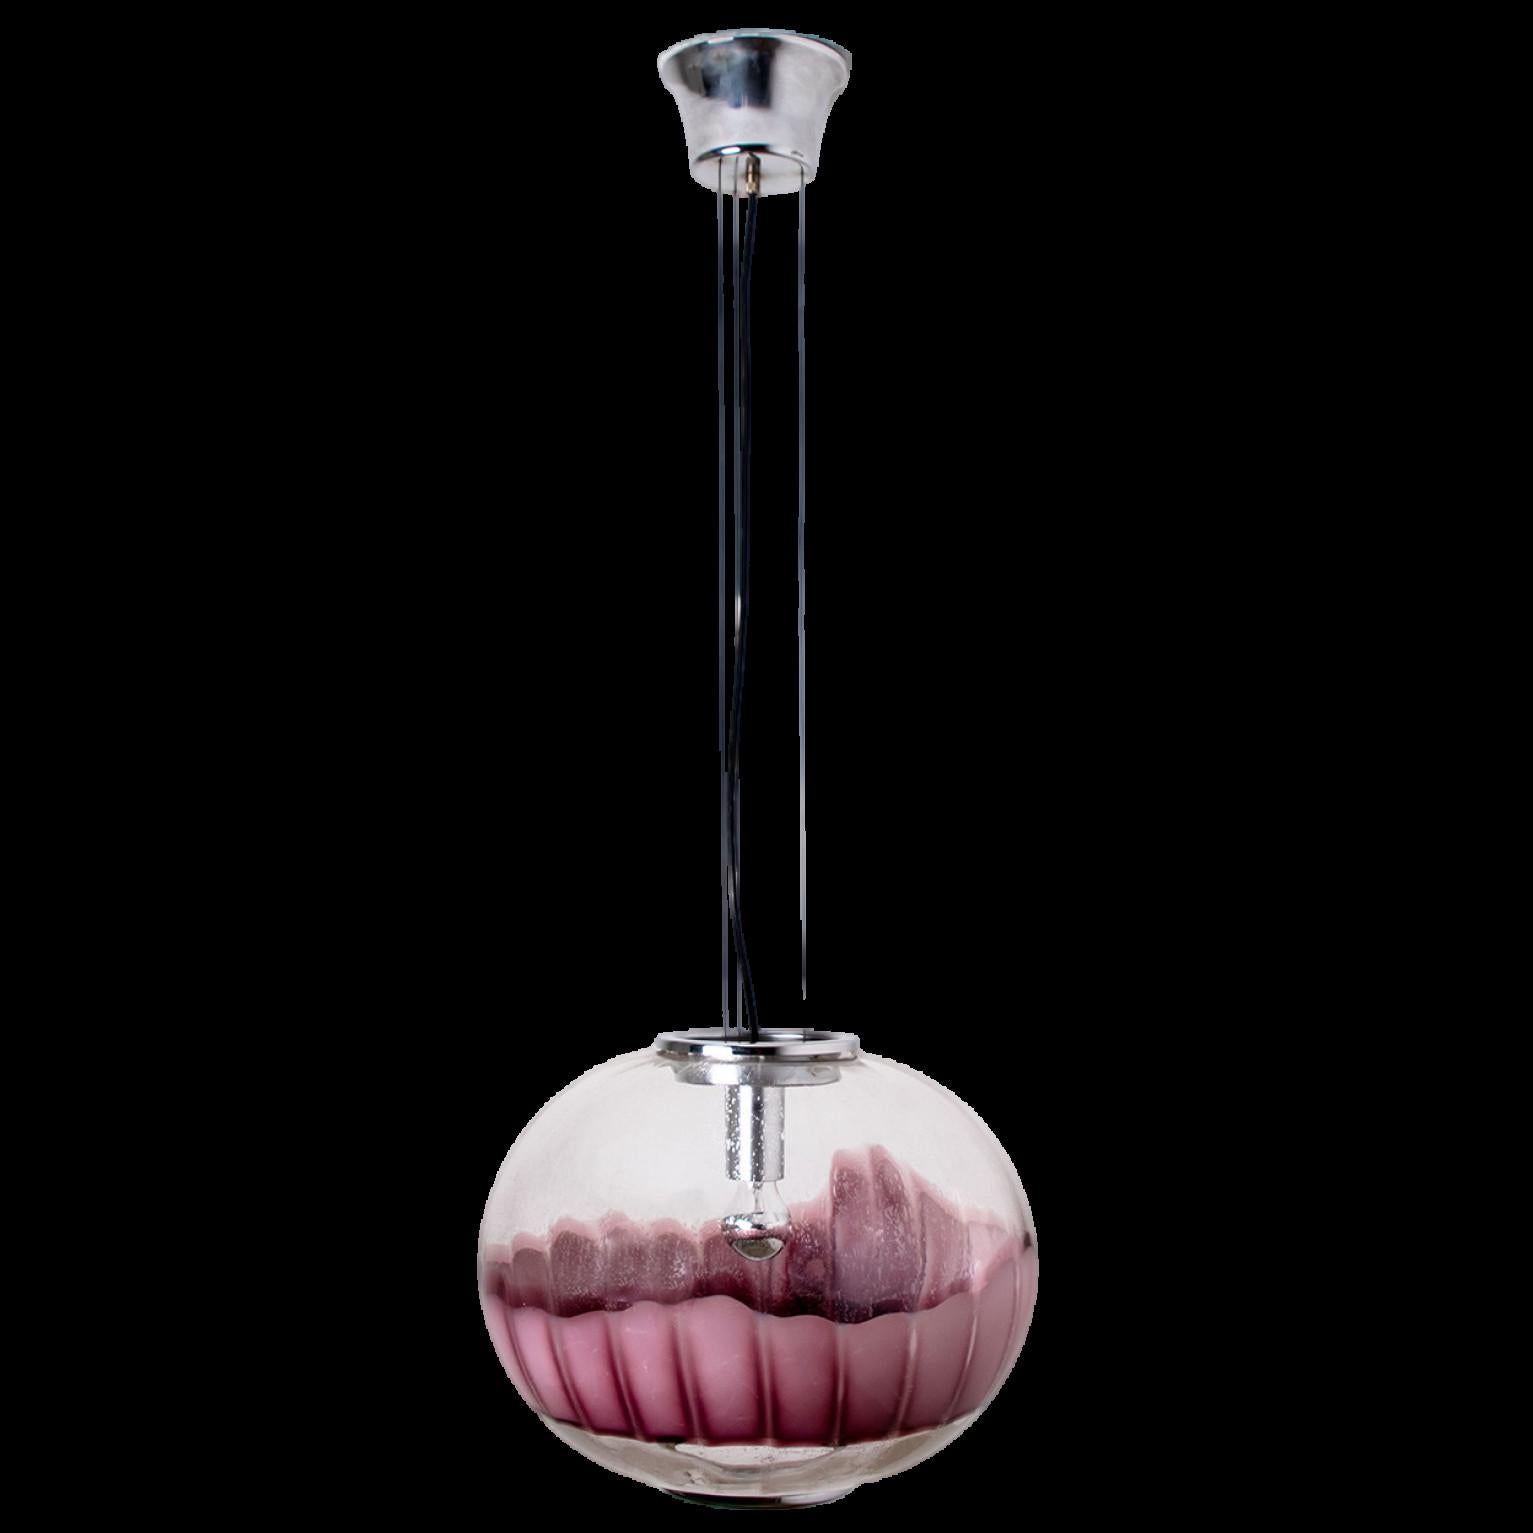 Une lampe suspendue magnifique et unique de Mazzega, Italie.
Du verre de Murano soufflé de couleur claire et aubergine ainsi qu'une base et une finition chromées composent cette magnifique pièce.

Mesures : H 27.24